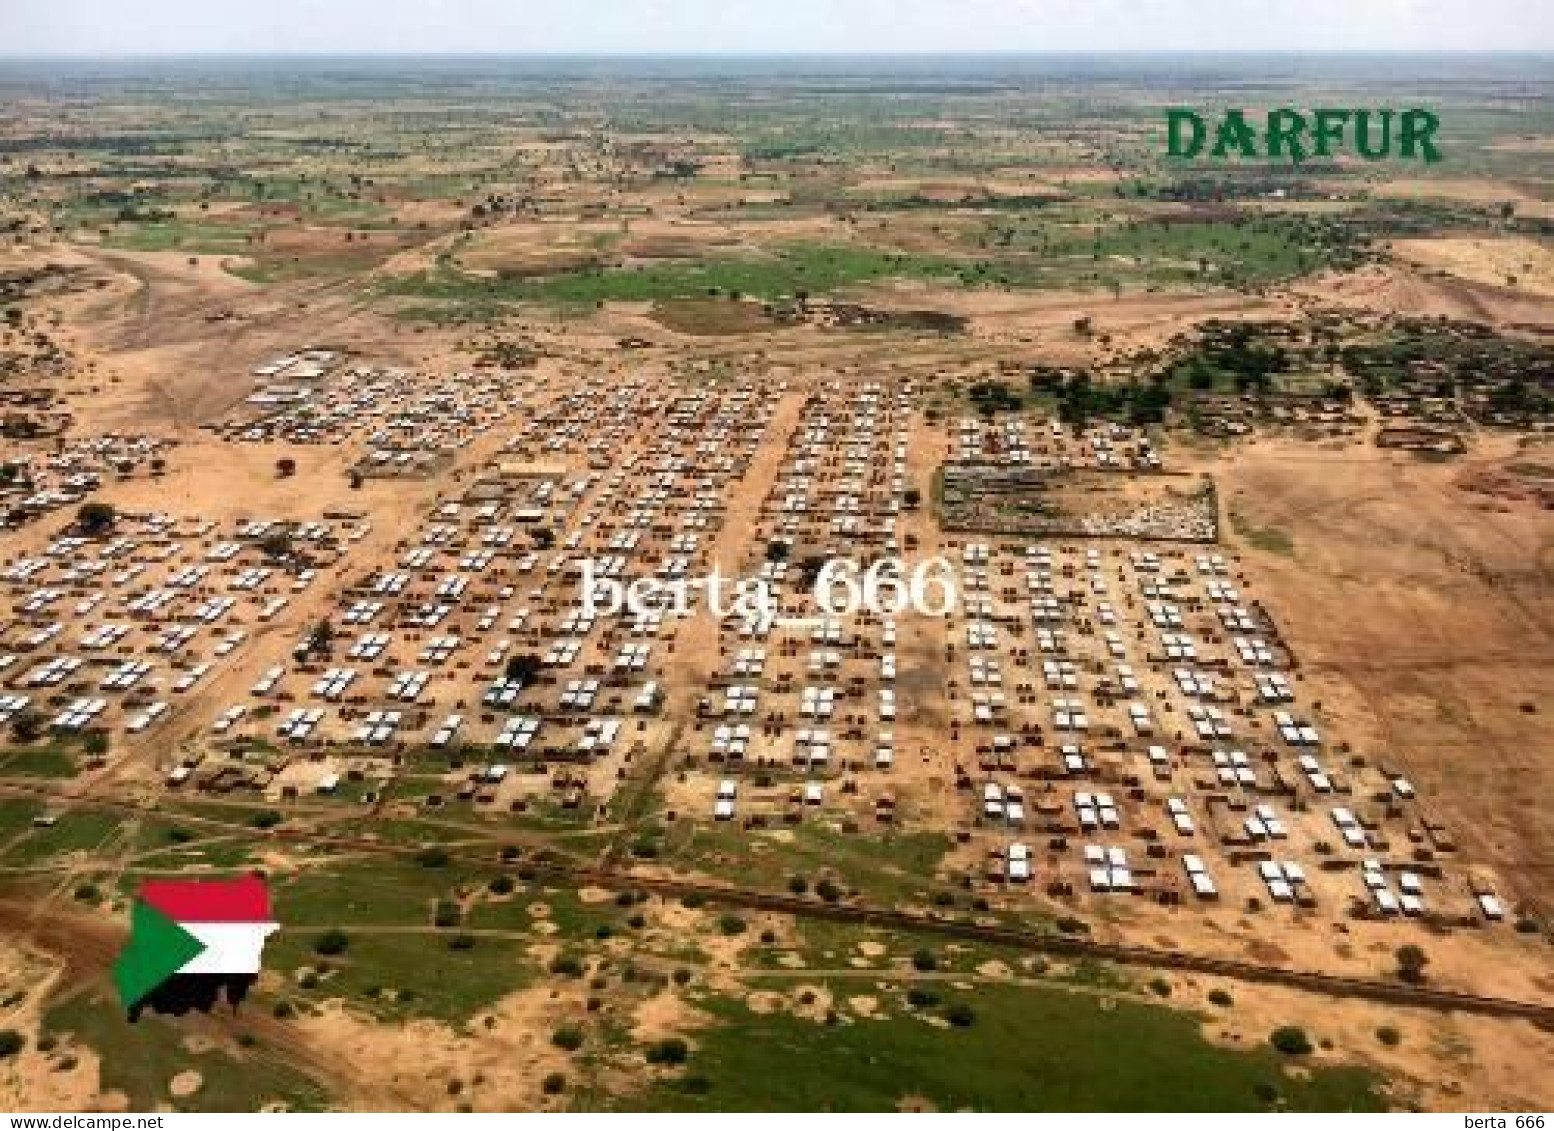 Sudan Darfur Aerial View New Postcard - Sudan